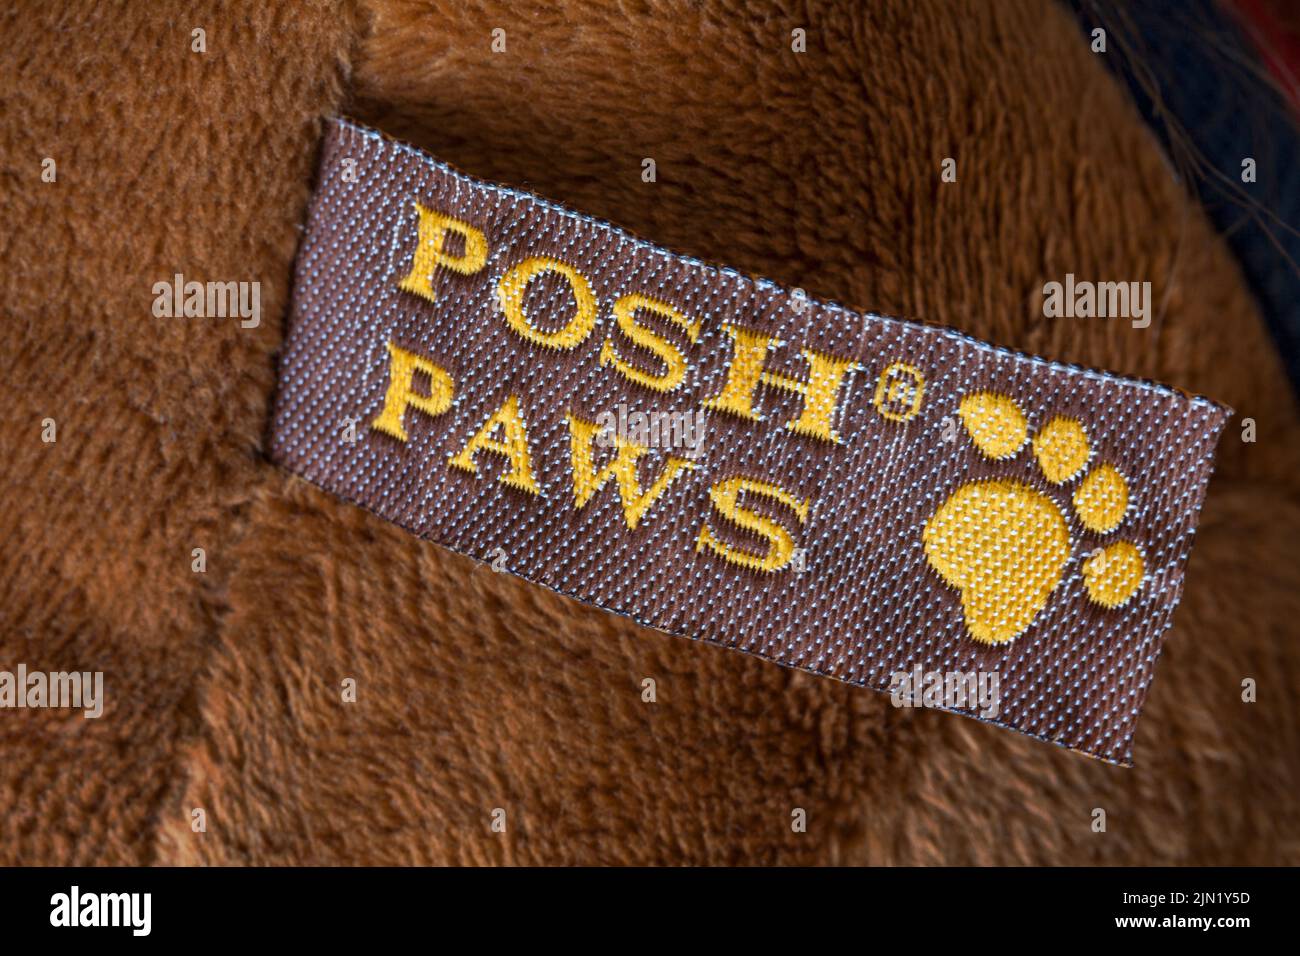 Elegante etiqueta Paws en un peluche suave Foto de stock